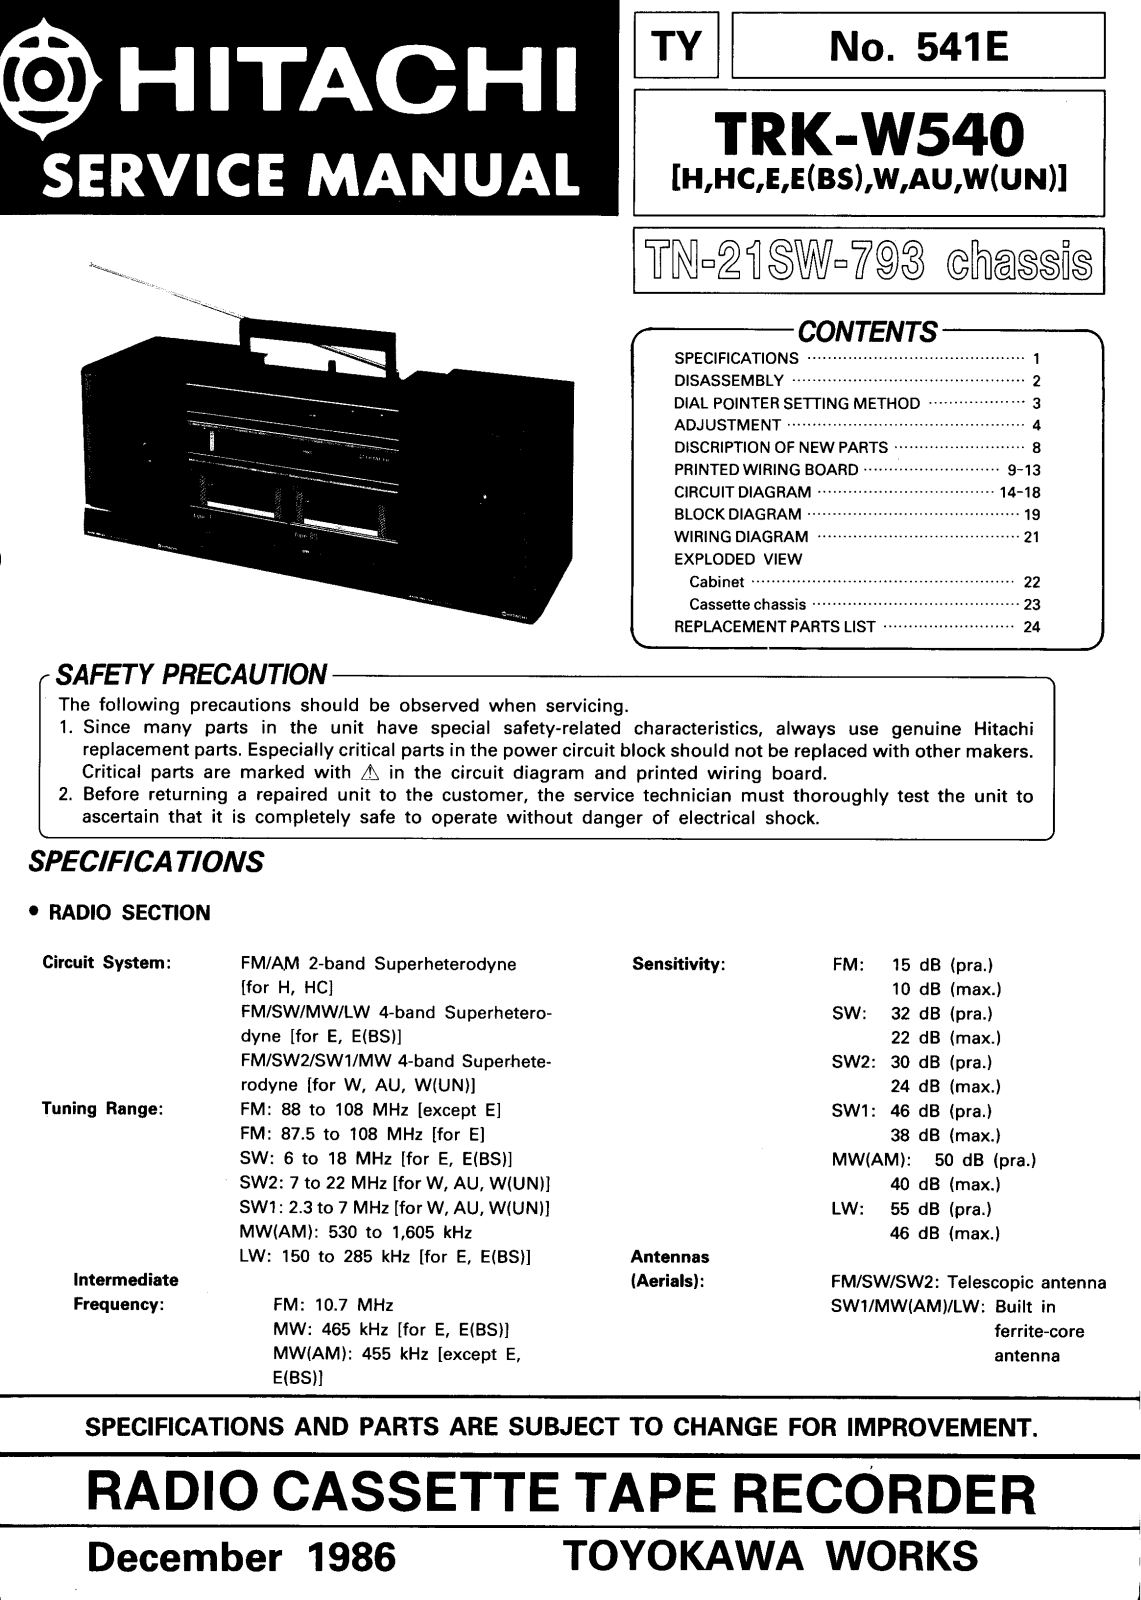 Hitachi TRK-W540 Service Manual